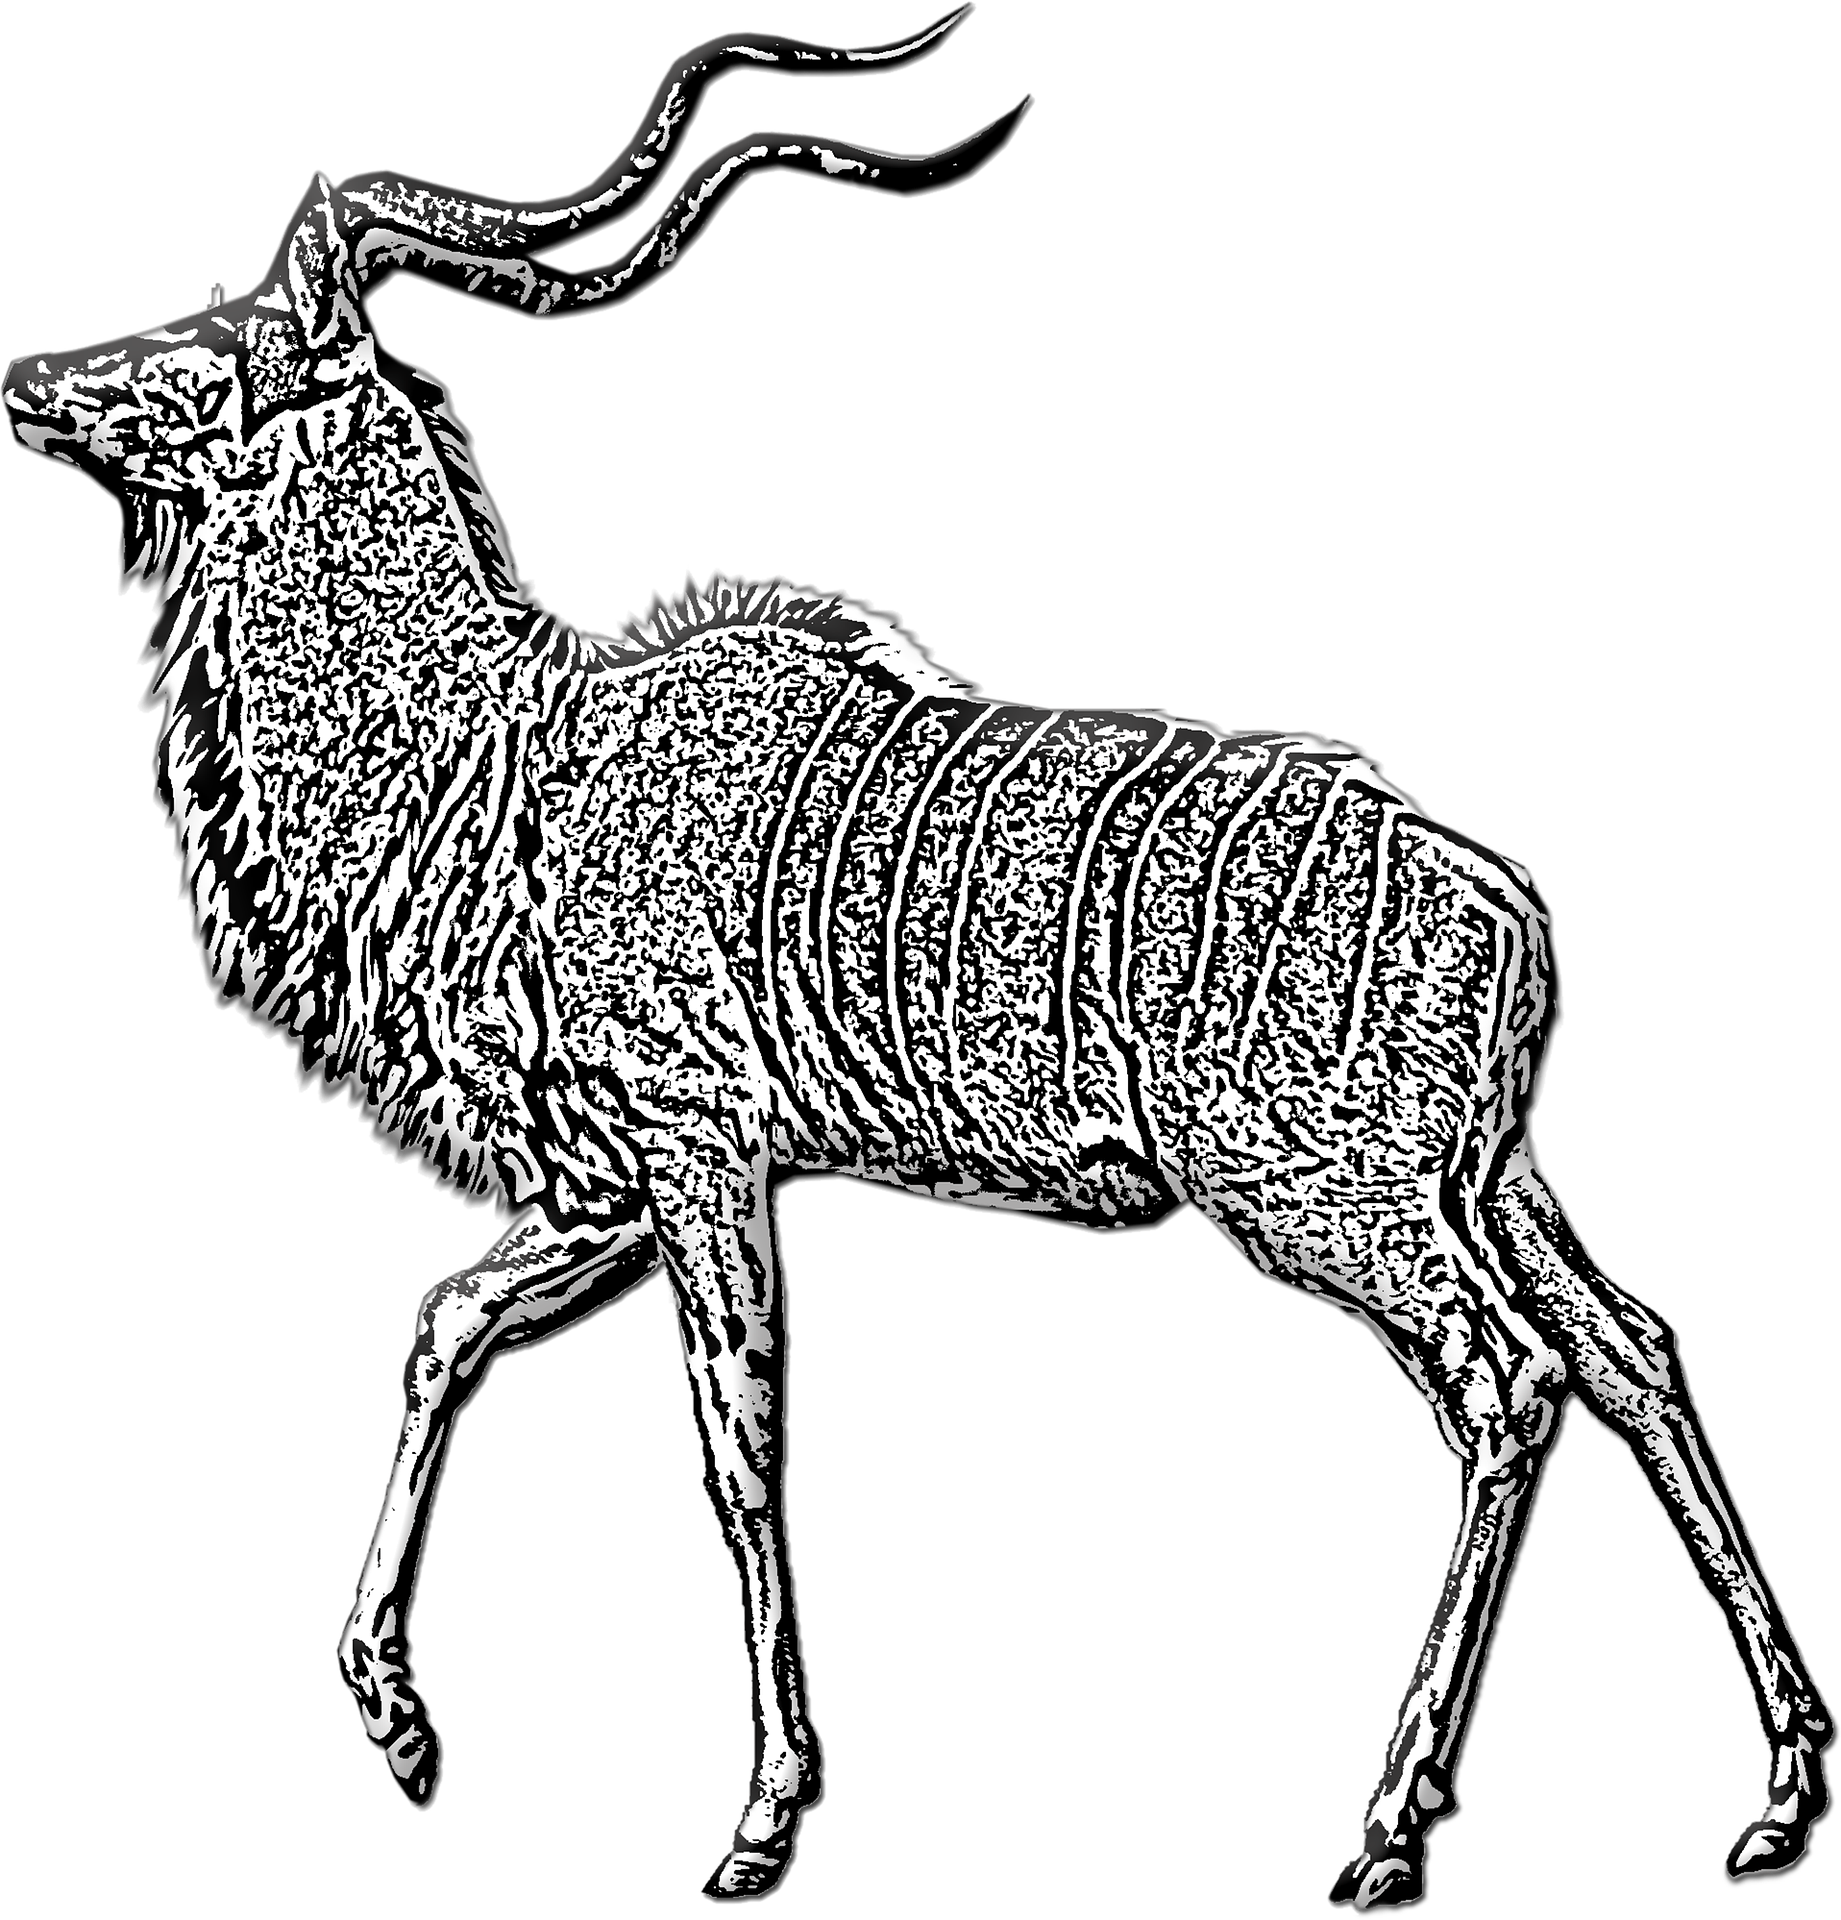 Disegno da colorare di cervo antilope